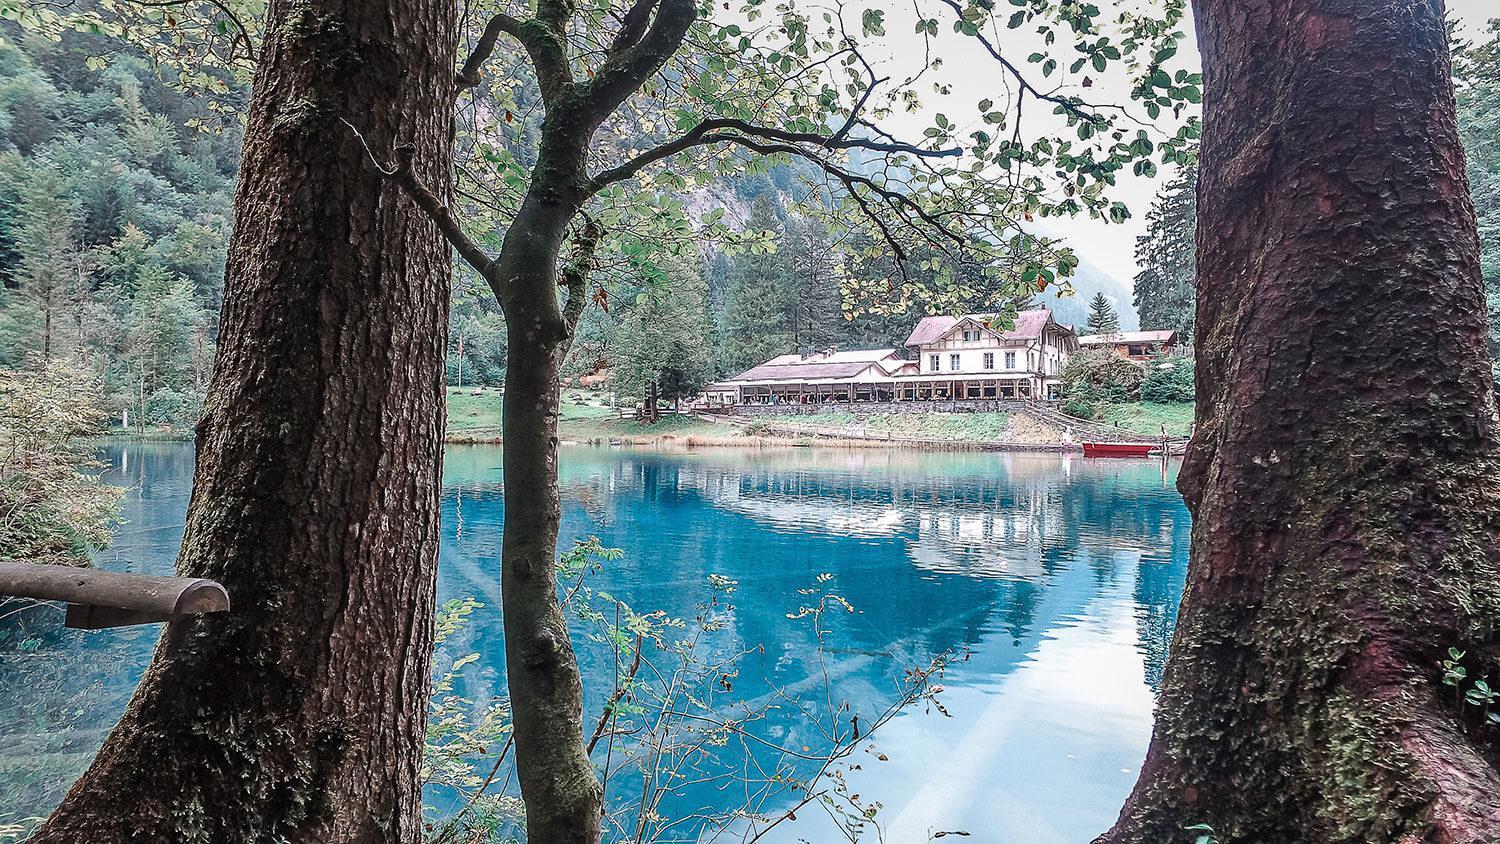 Büyüleyici renkleri ile dünyanın en güzel göllerinden biri: Blausee Gölü